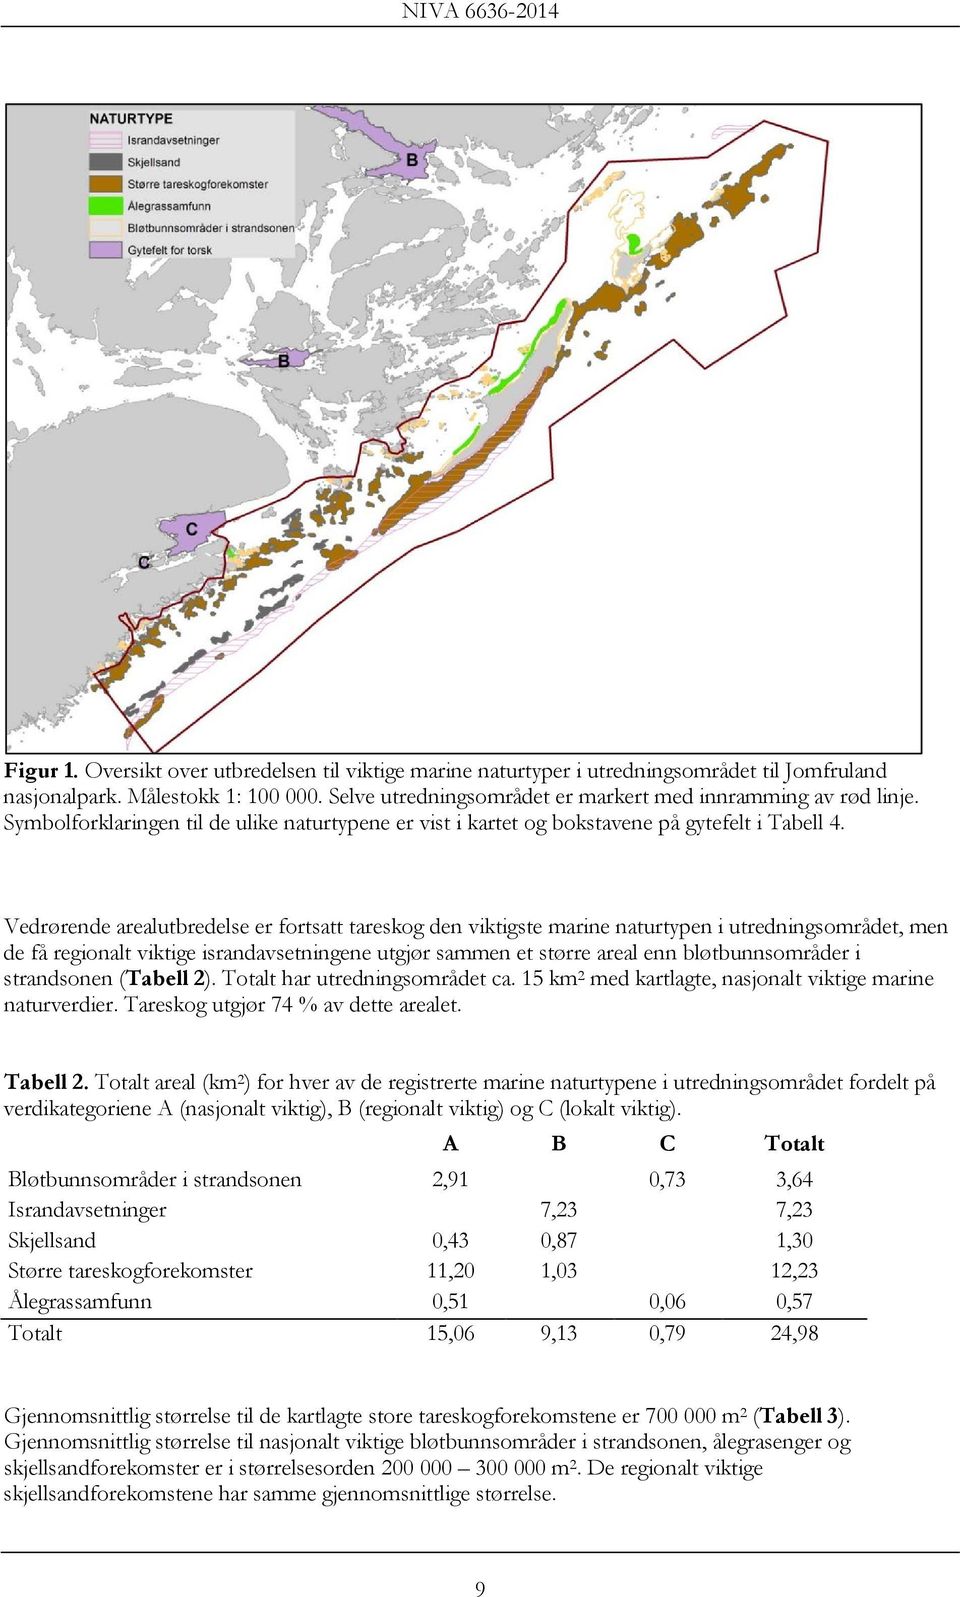 Vedrørende arealutbredelse er fortsatt tareskog den viktigste marine naturtypen i utredningsområdet, men de få regionalt viktige israndavsetningene utgjør sammen et større areal enn bløtbunnsområder